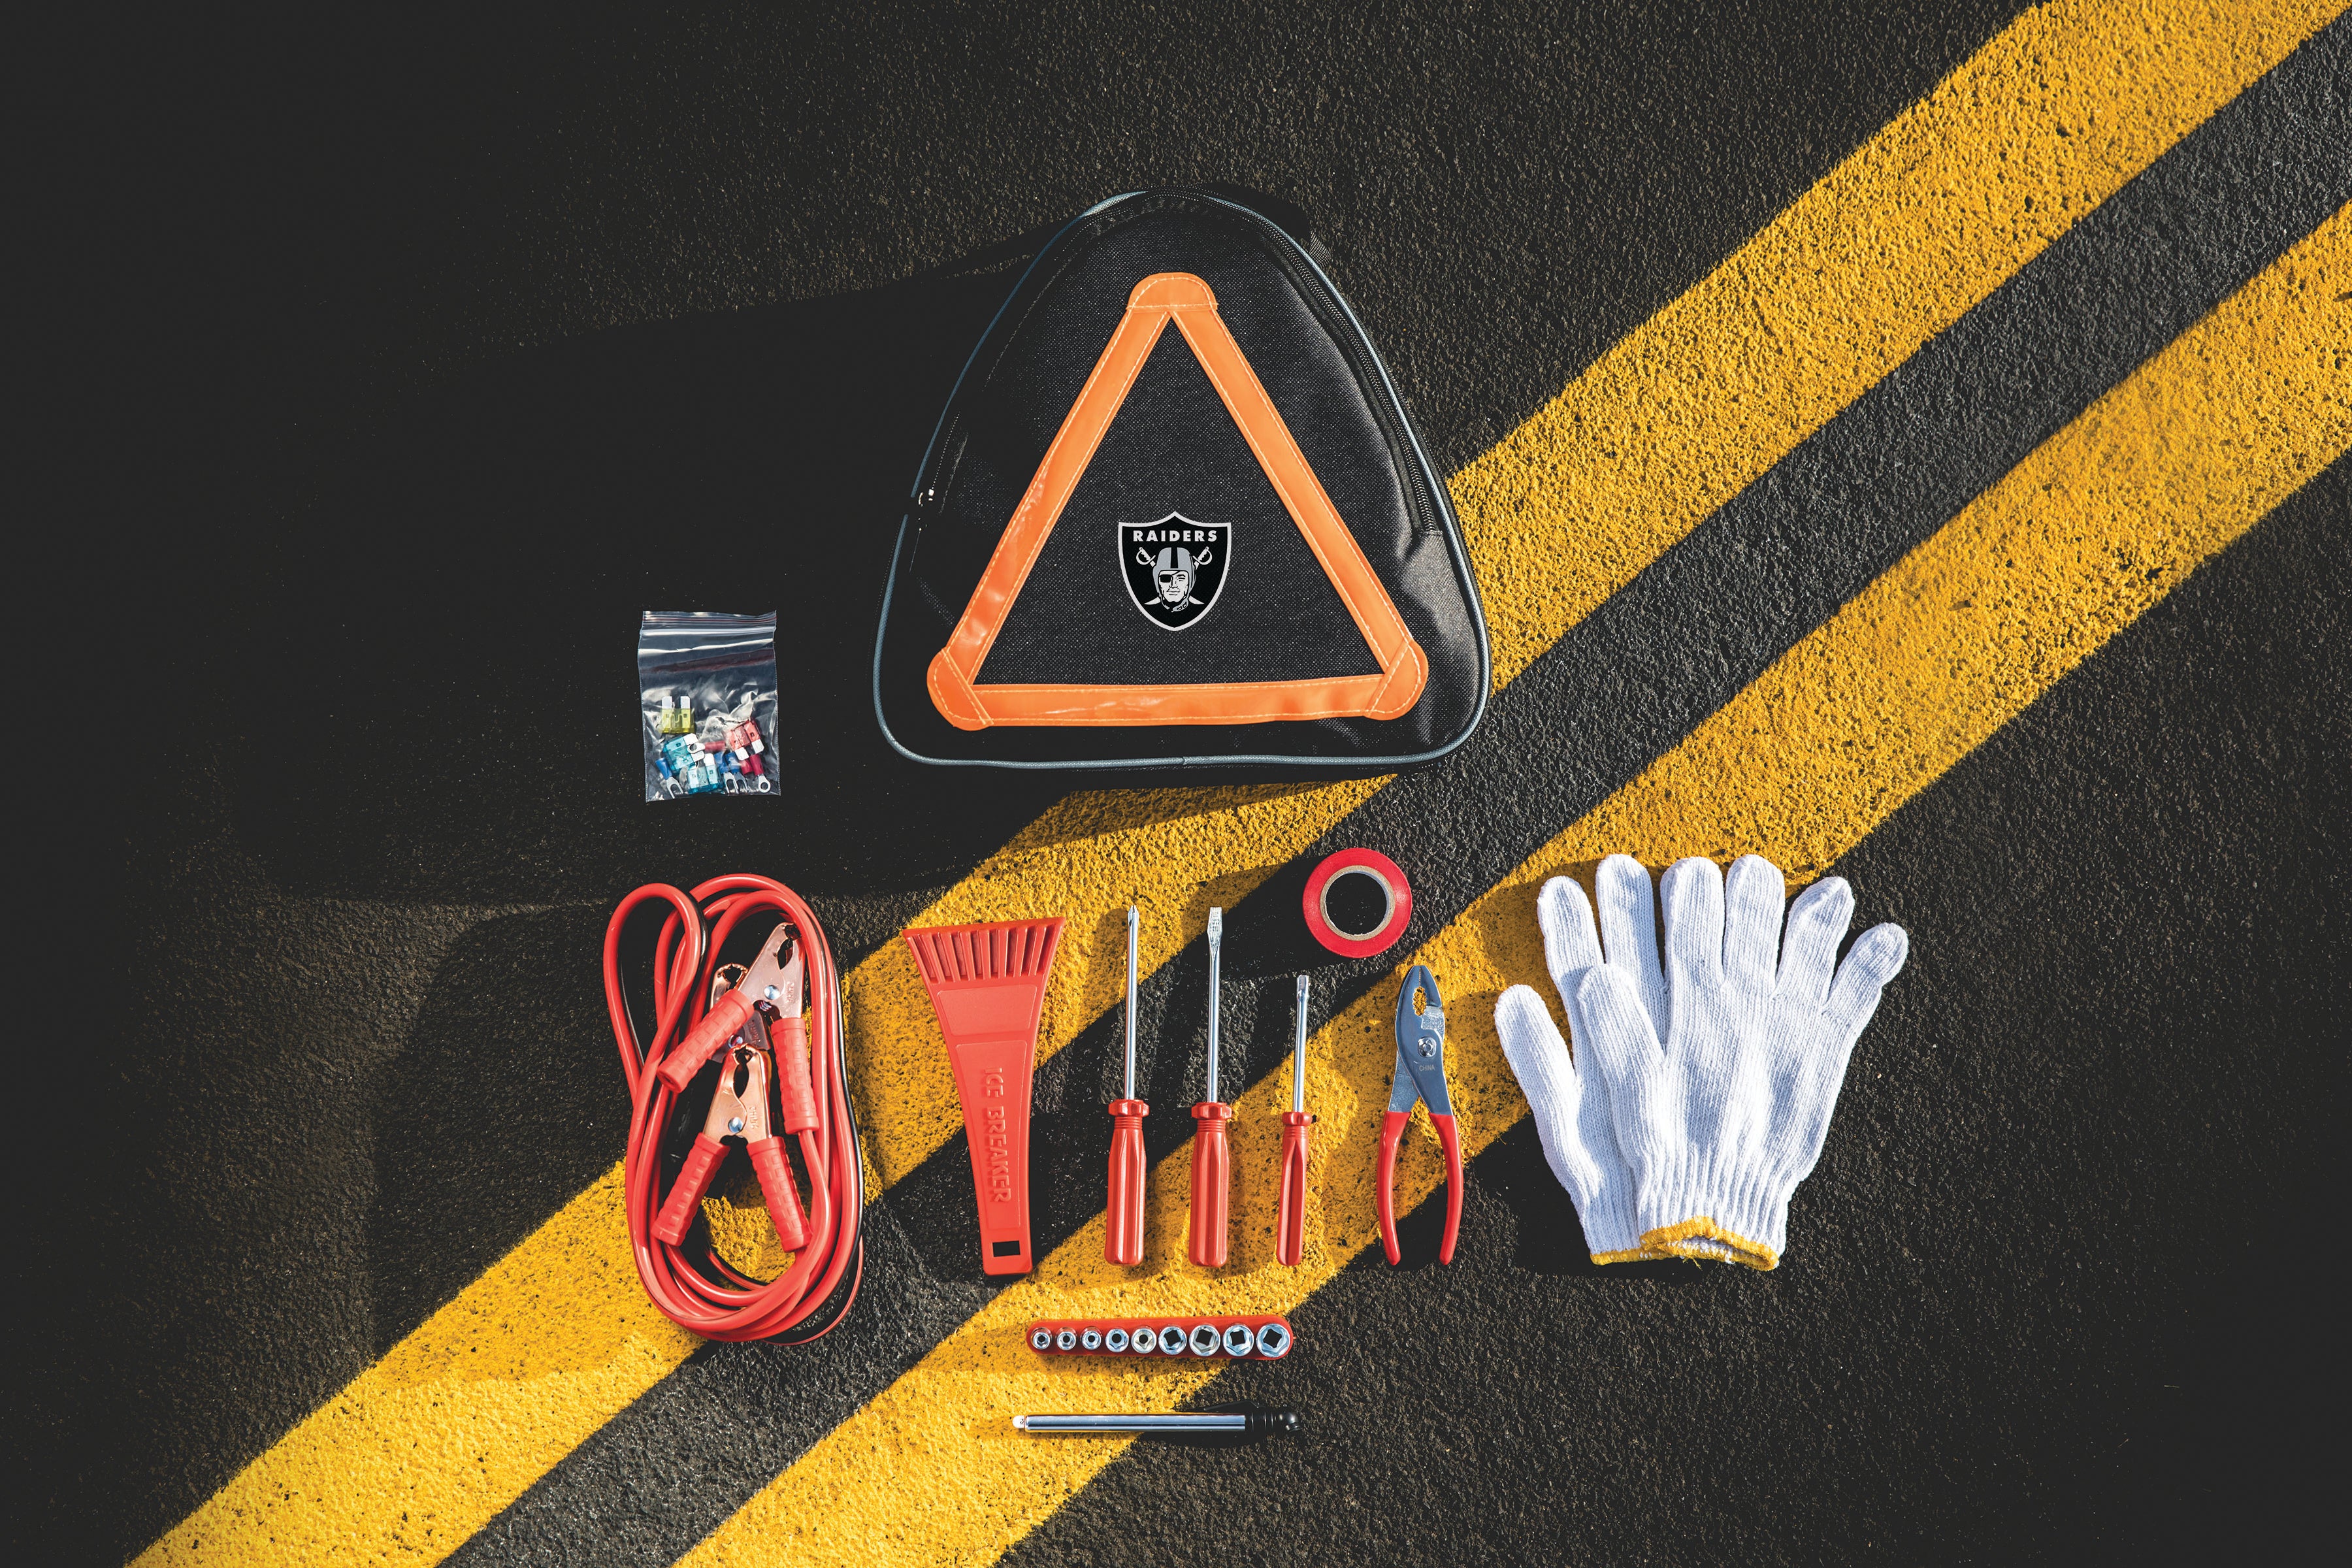 Las Vegas Raiders - Roadside Emergency Car Kit